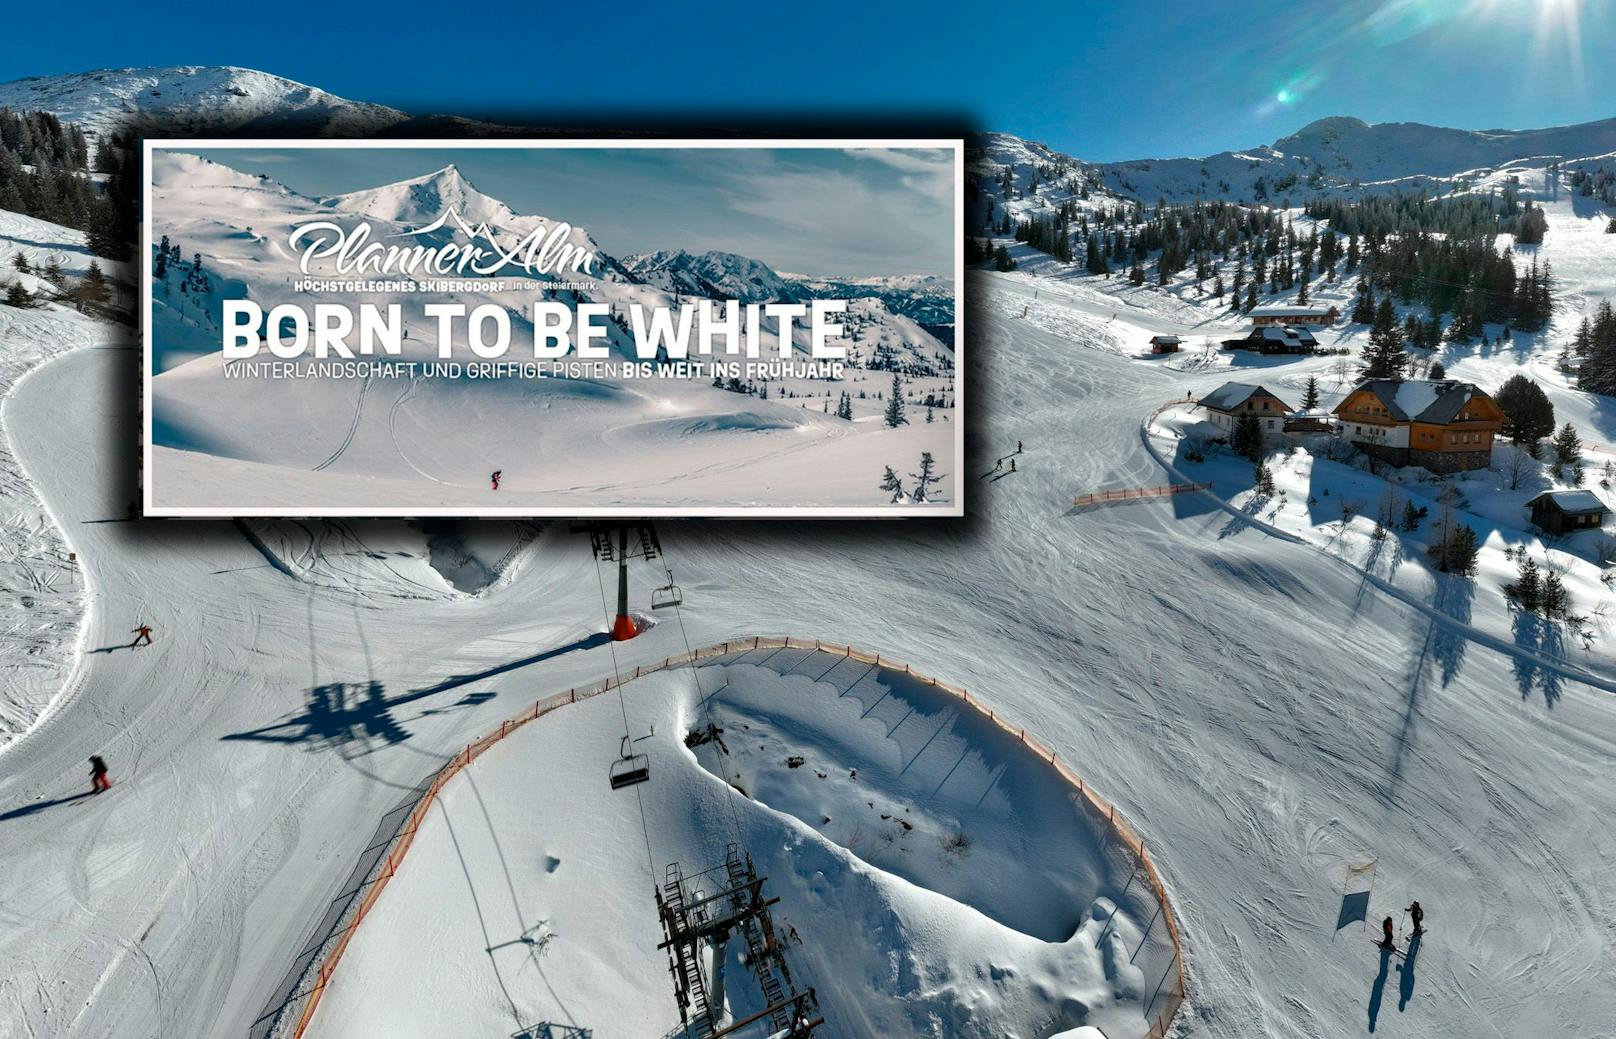 Beim Werberat wurde eine Beschwerde über den Slogan "Born to be white" eingereicht. Dieser befand die Werbung für unbedenklich.